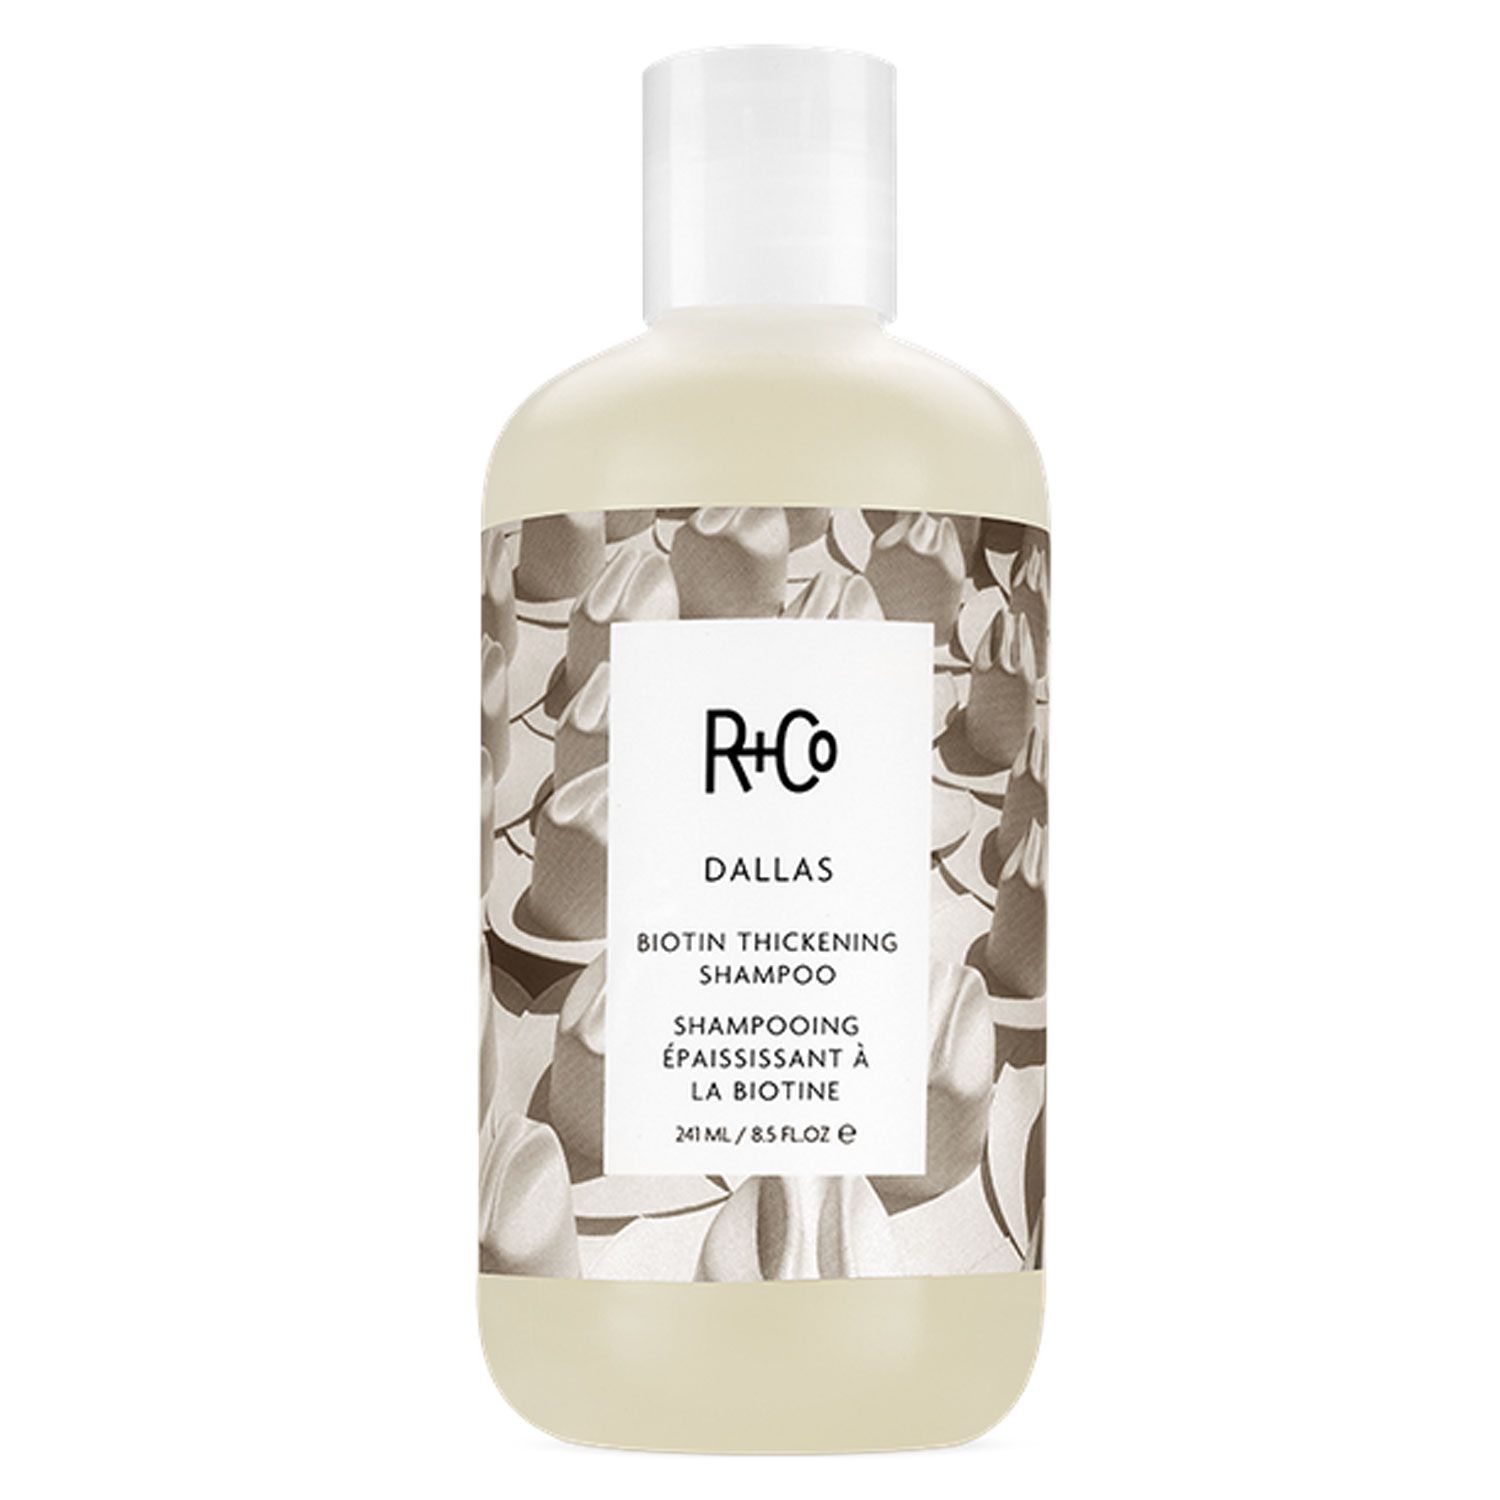 R+Co. Dallas Biotin Thickening Shampoo